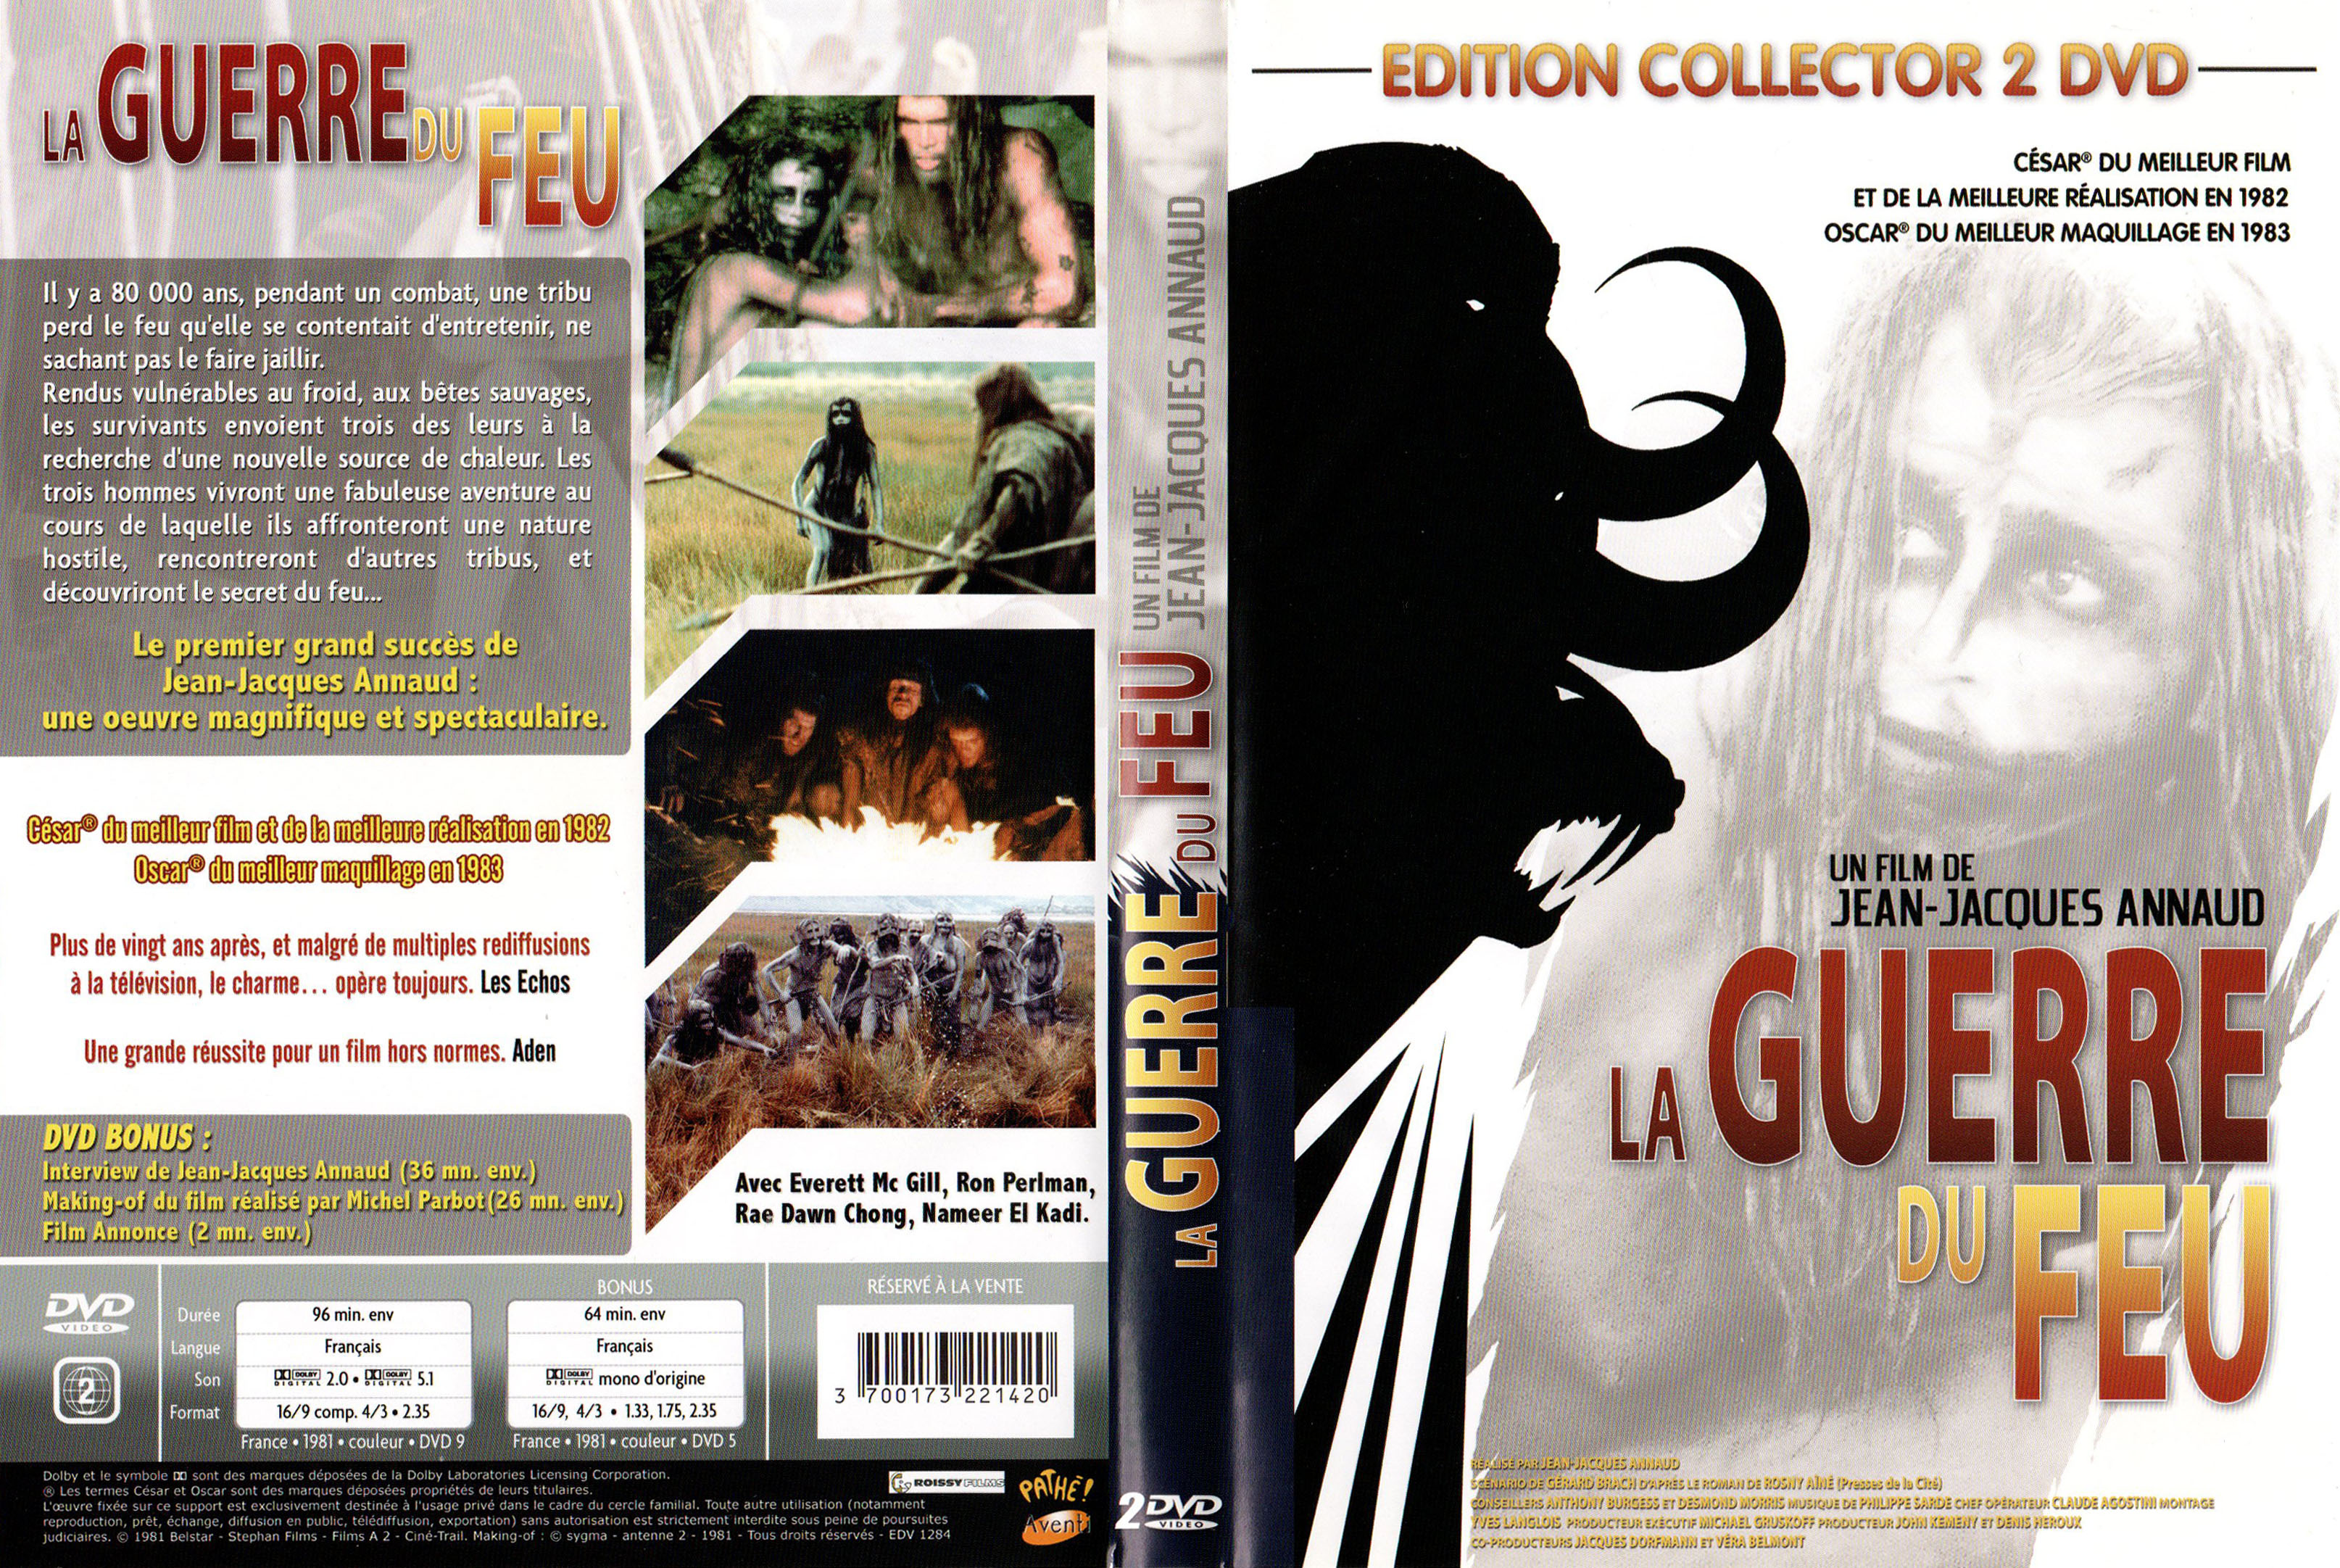 Jaquette DVD La guerre du feu v5